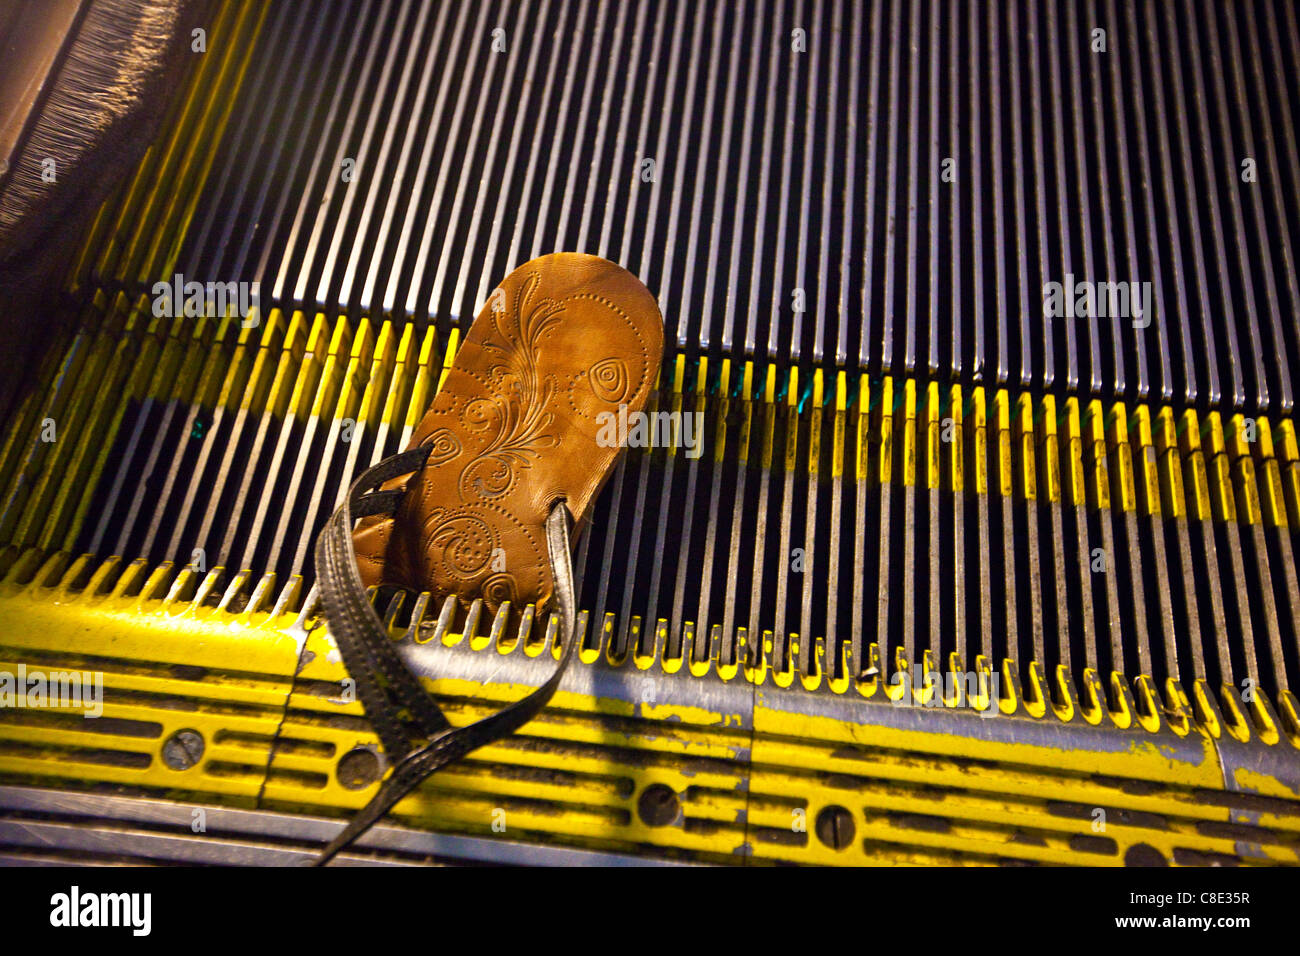 Sandale pris dans un escalator, Washington DC Banque D'Images